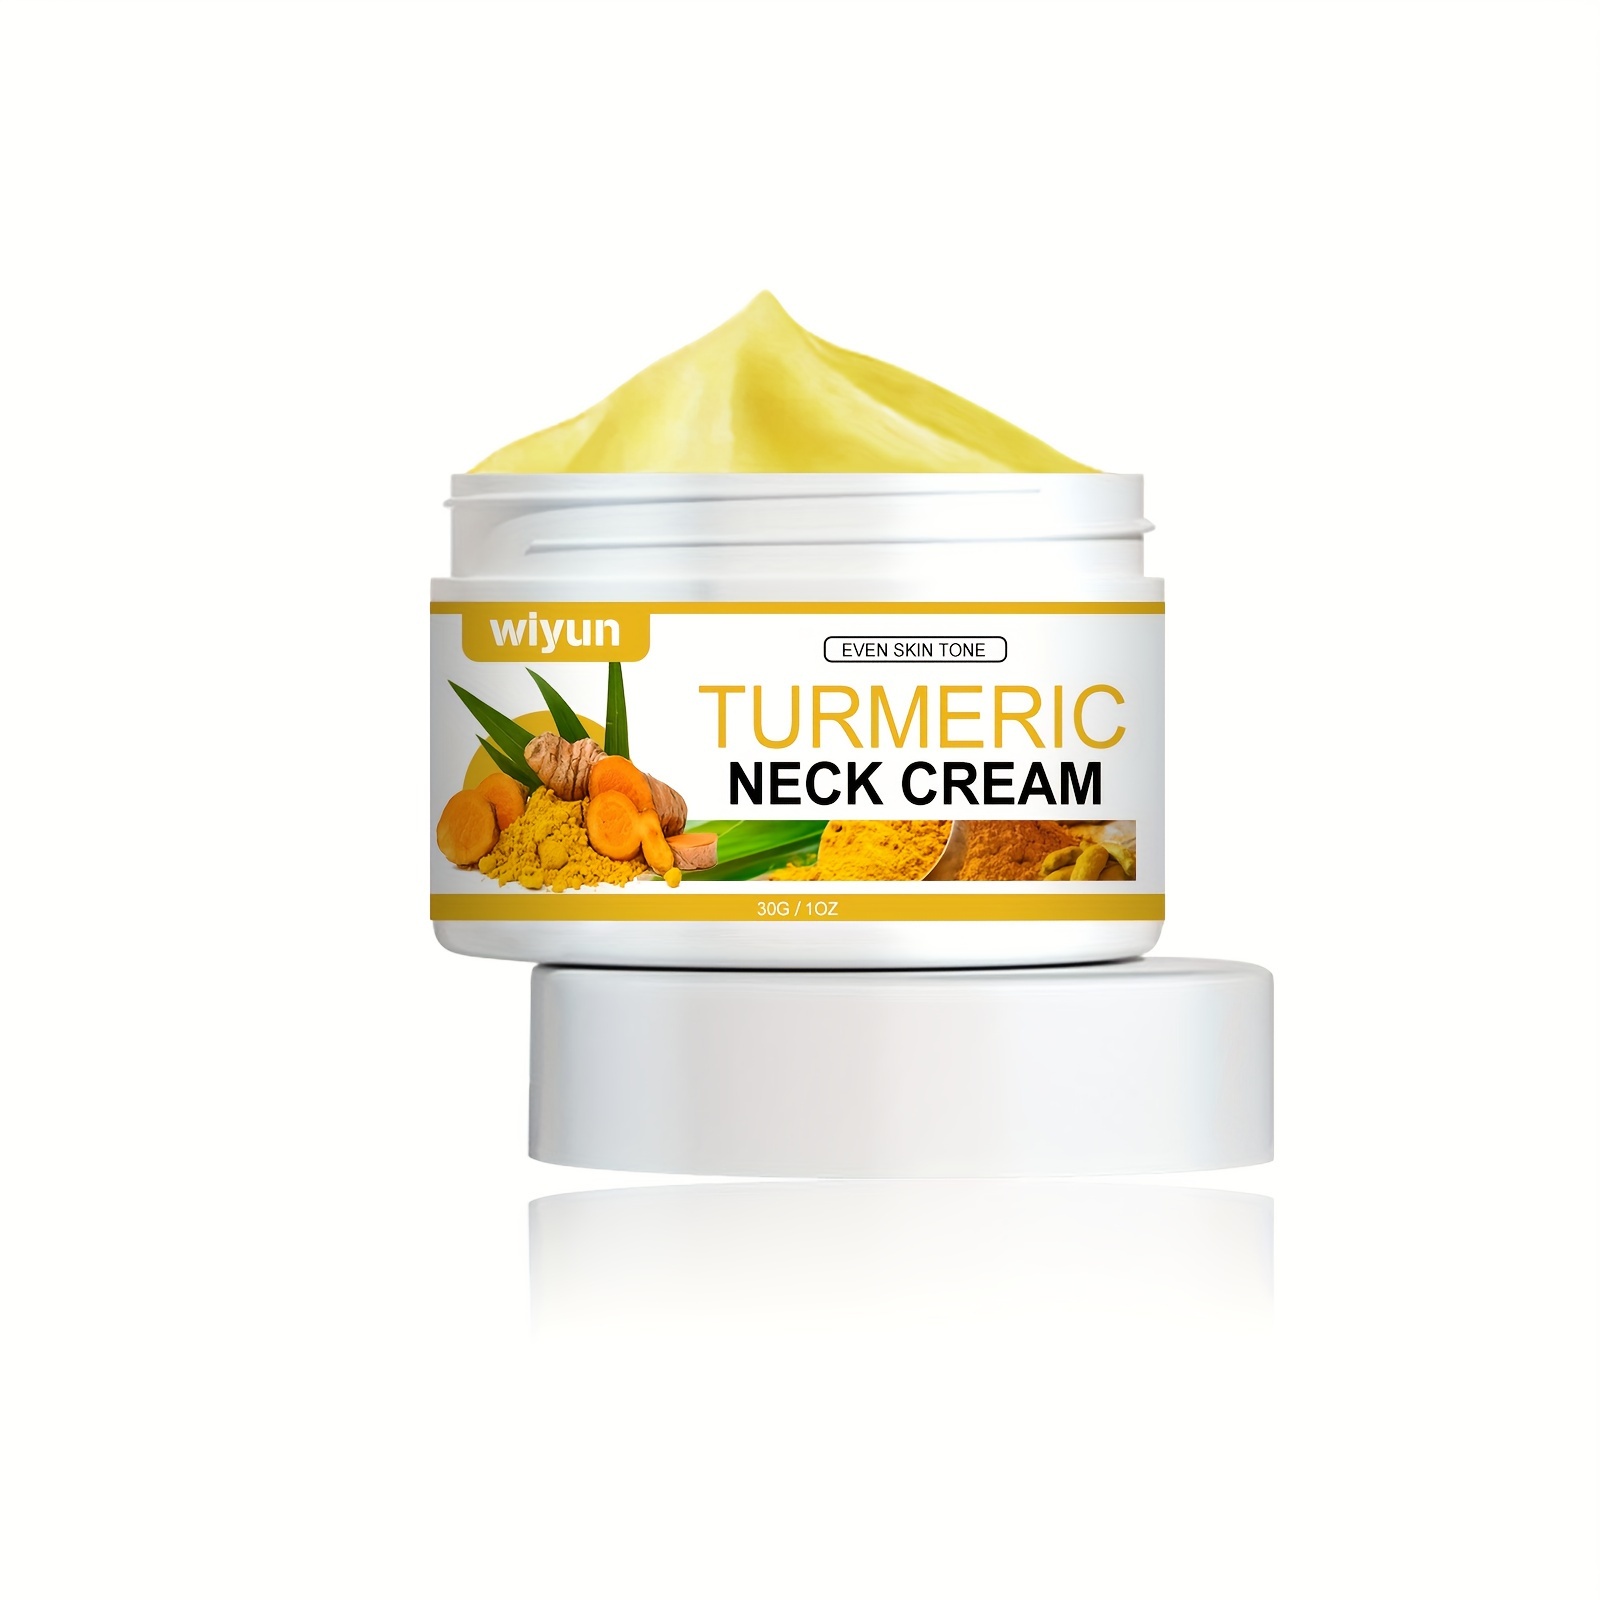 Hibiscus and Honey Firming Cream,Skin Tightening Cream,Neck